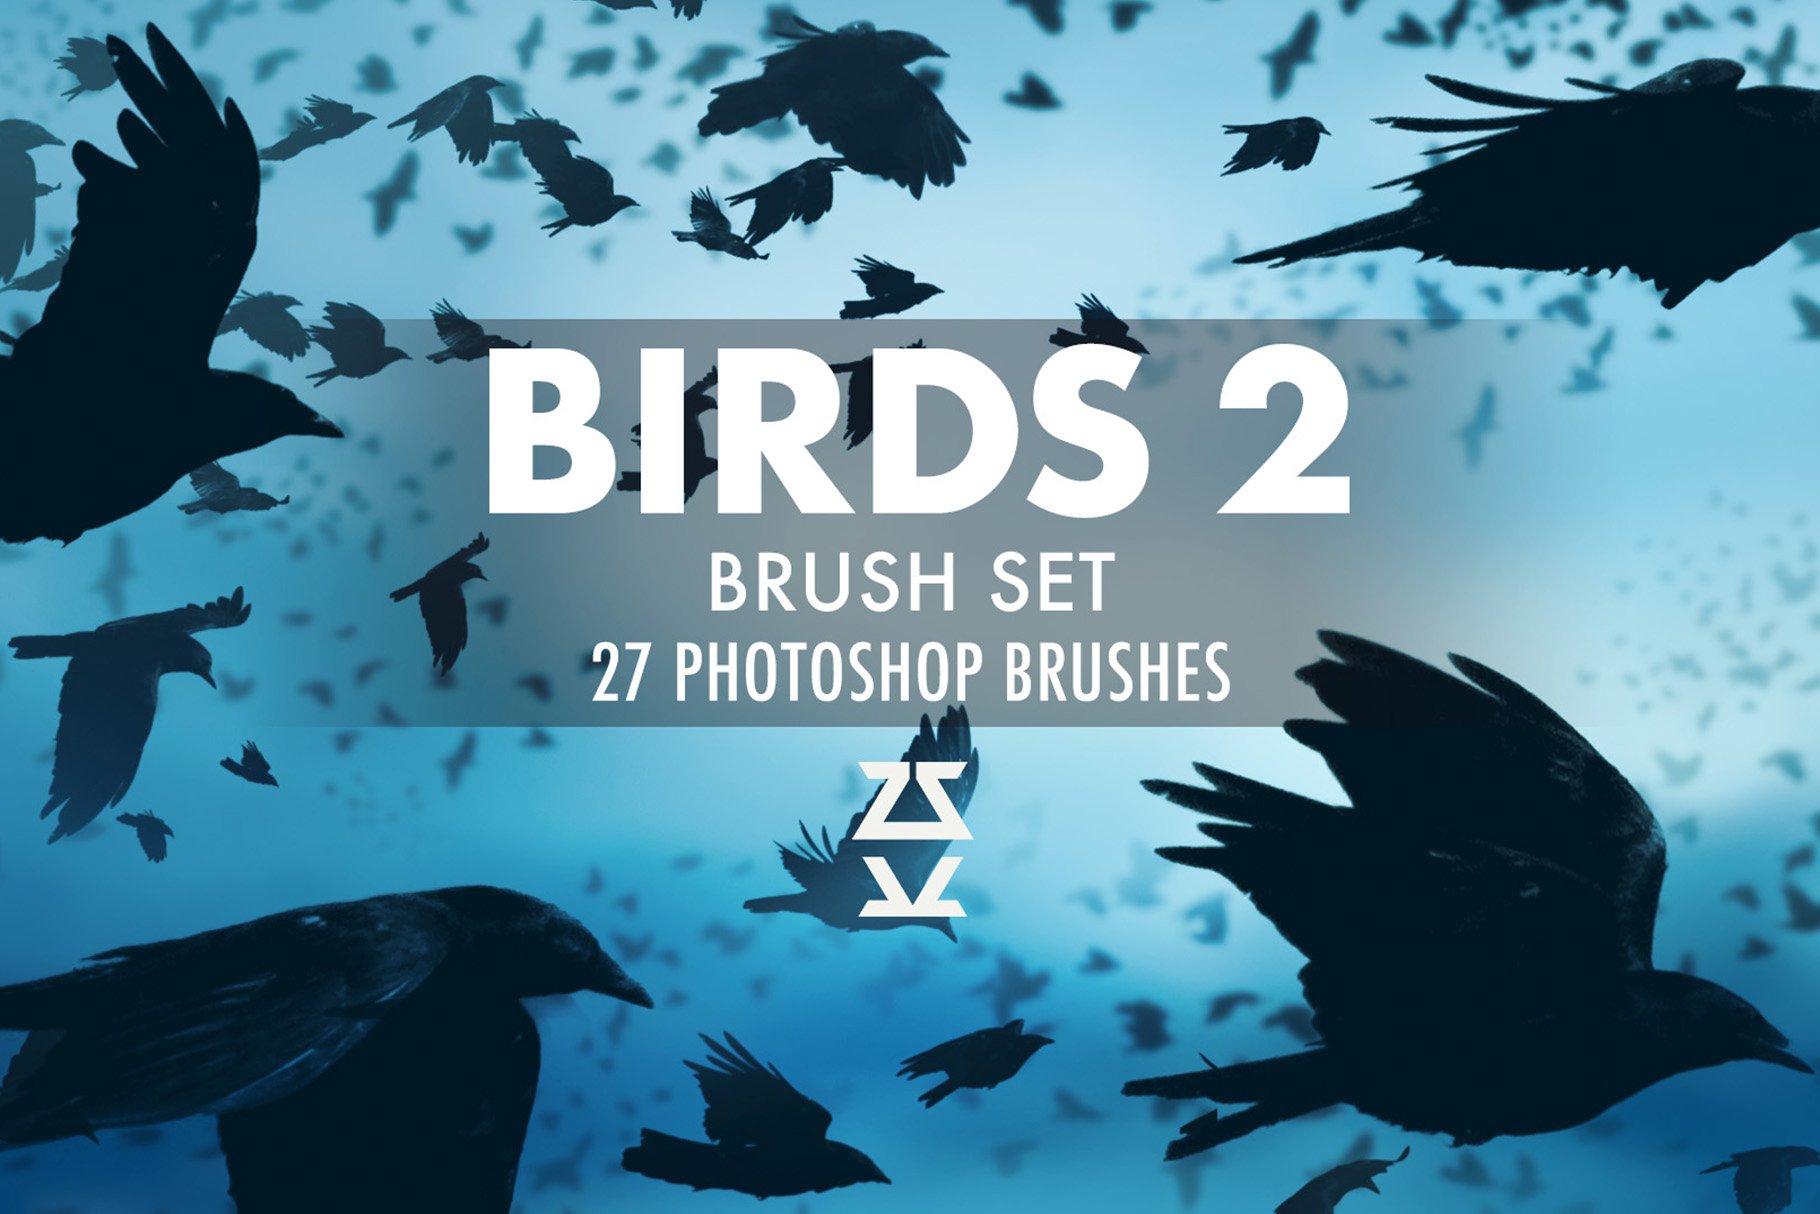 Birds 2 Brush Setcover image.